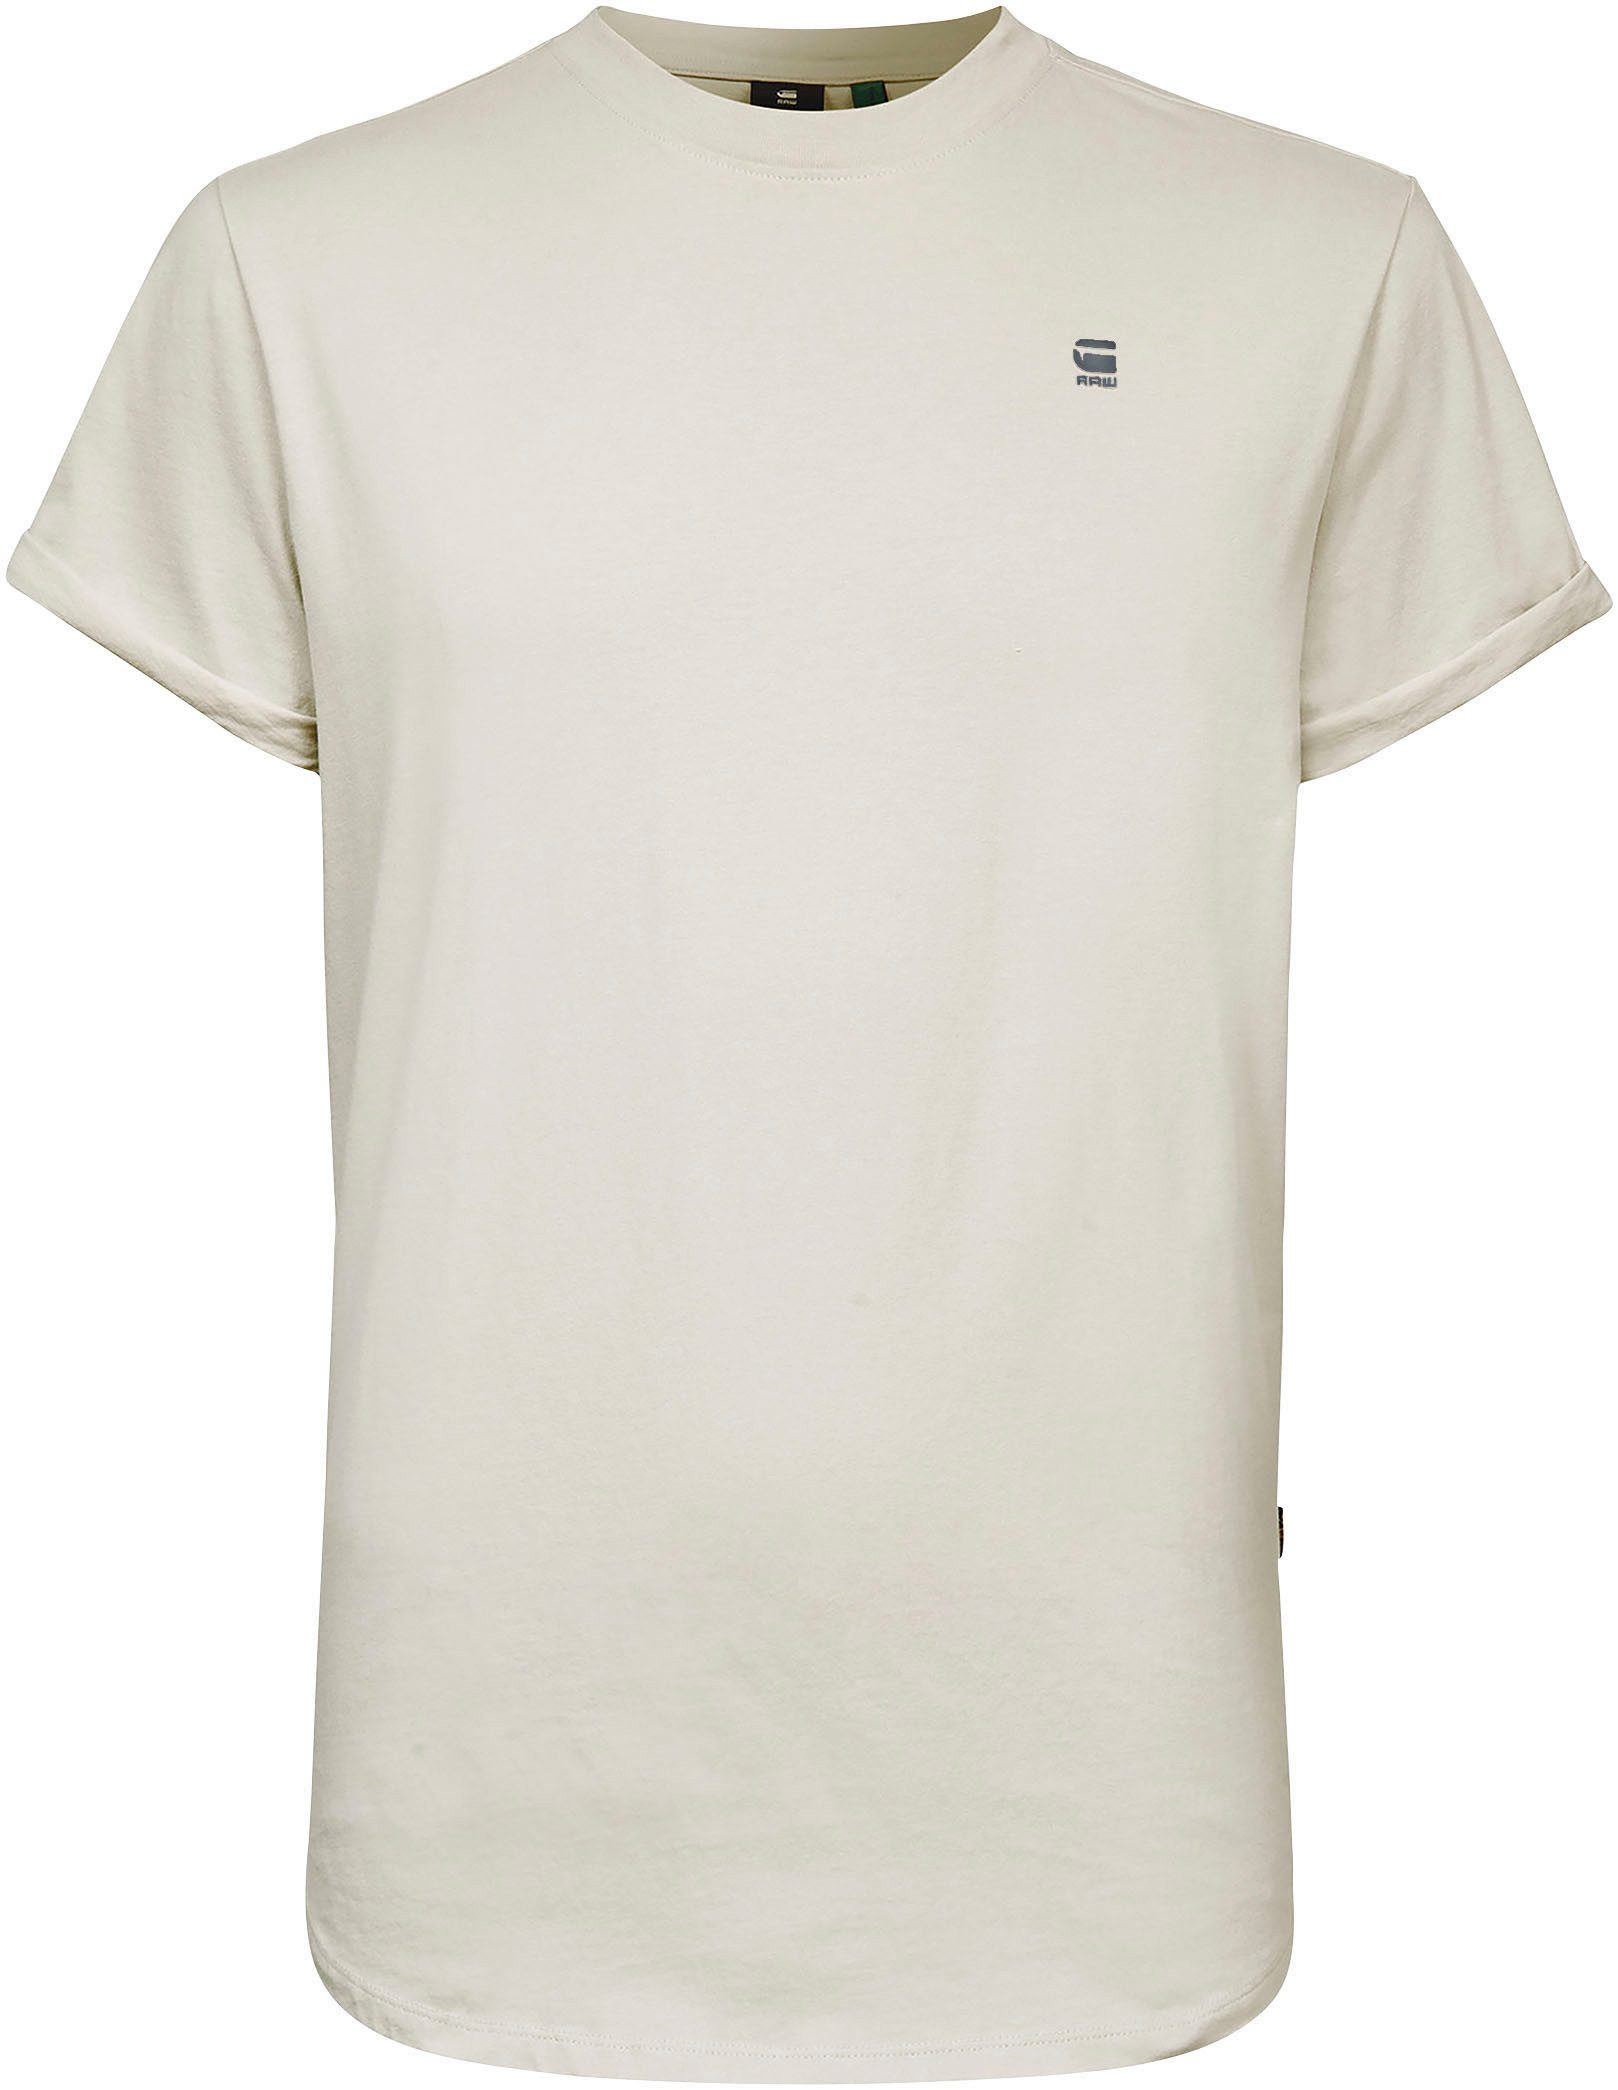 T-Shirt Logo RAW G-Star Lash bait kleinem white Stitching mit